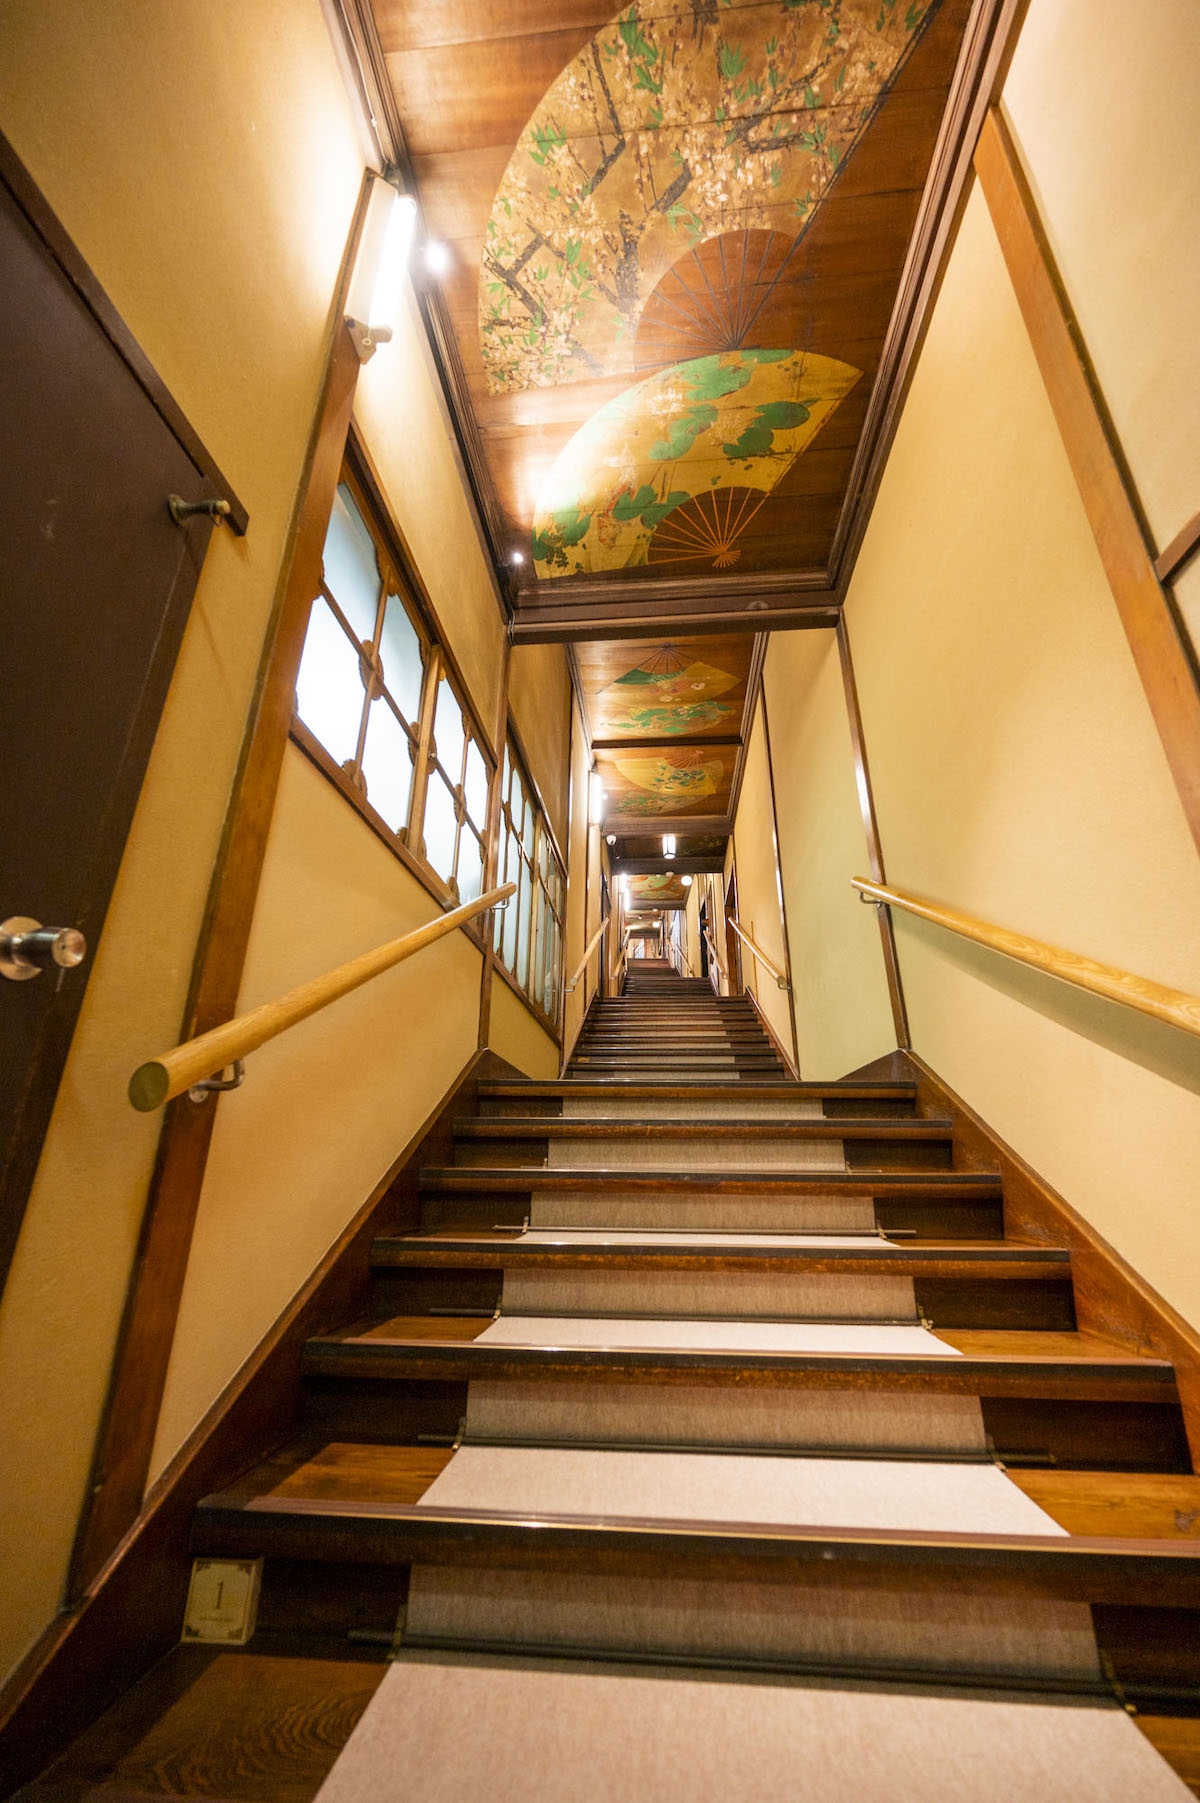 東京都指定有形文化財 「百段階段」。7つの部屋が階段廊下で繋がれています。　photo by　ぷらいまり